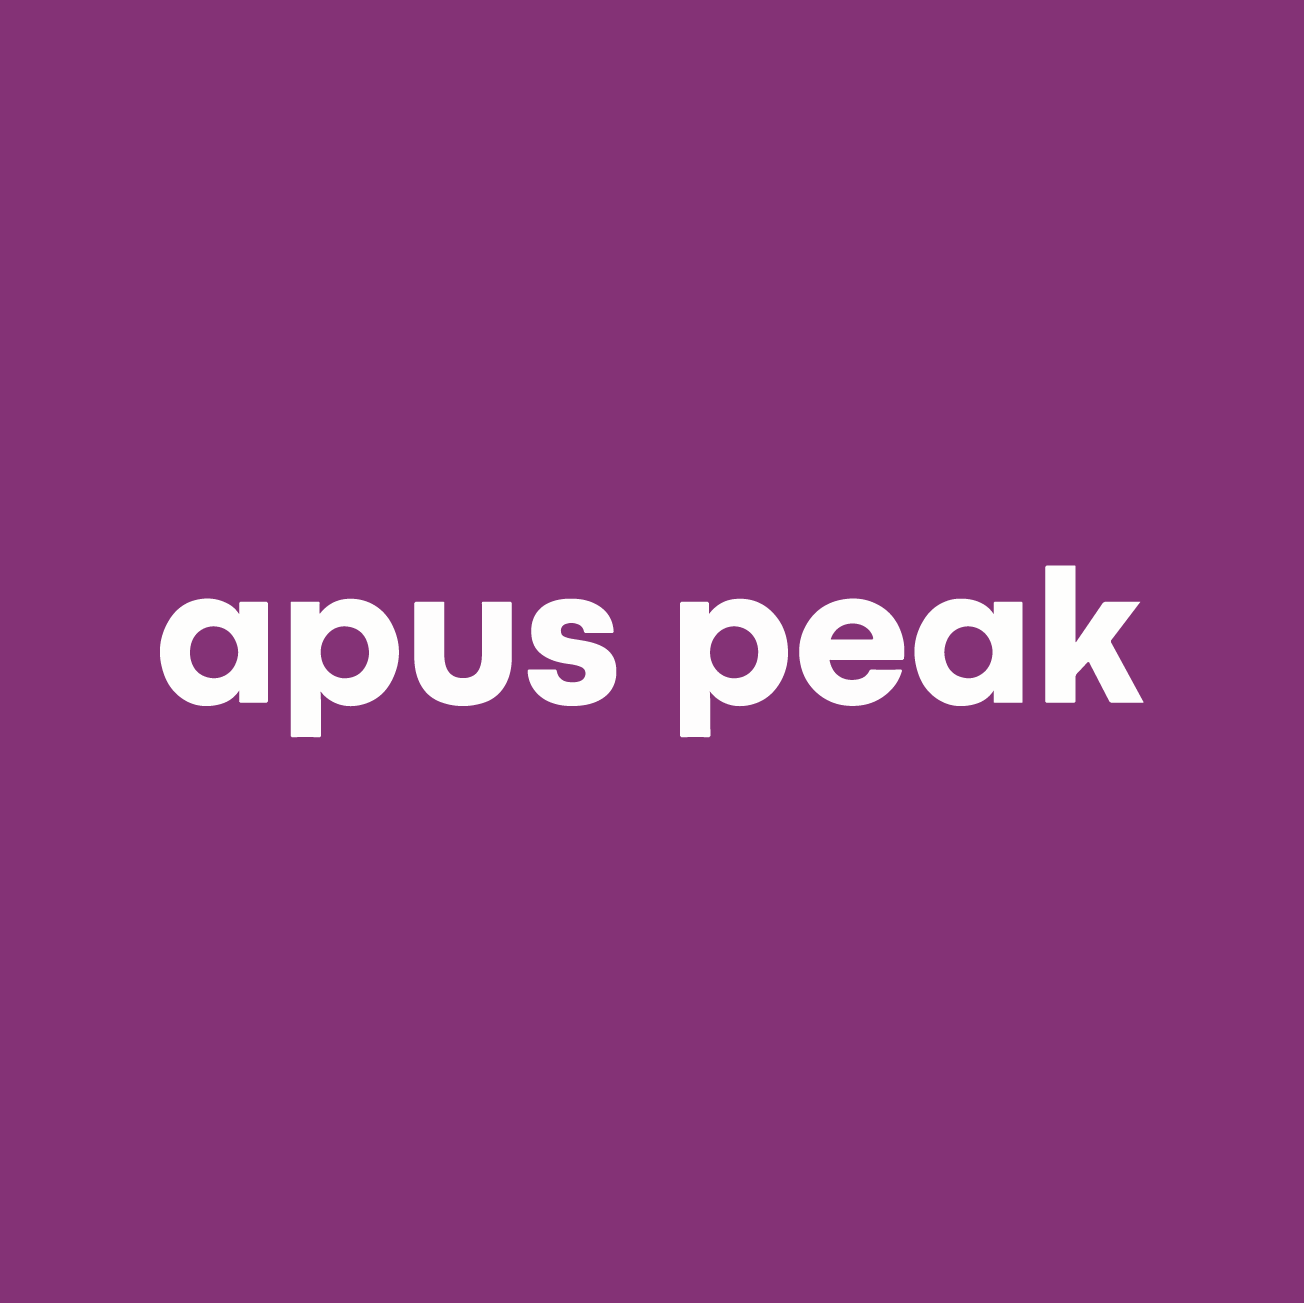 Club Image for APUS PEAK RT